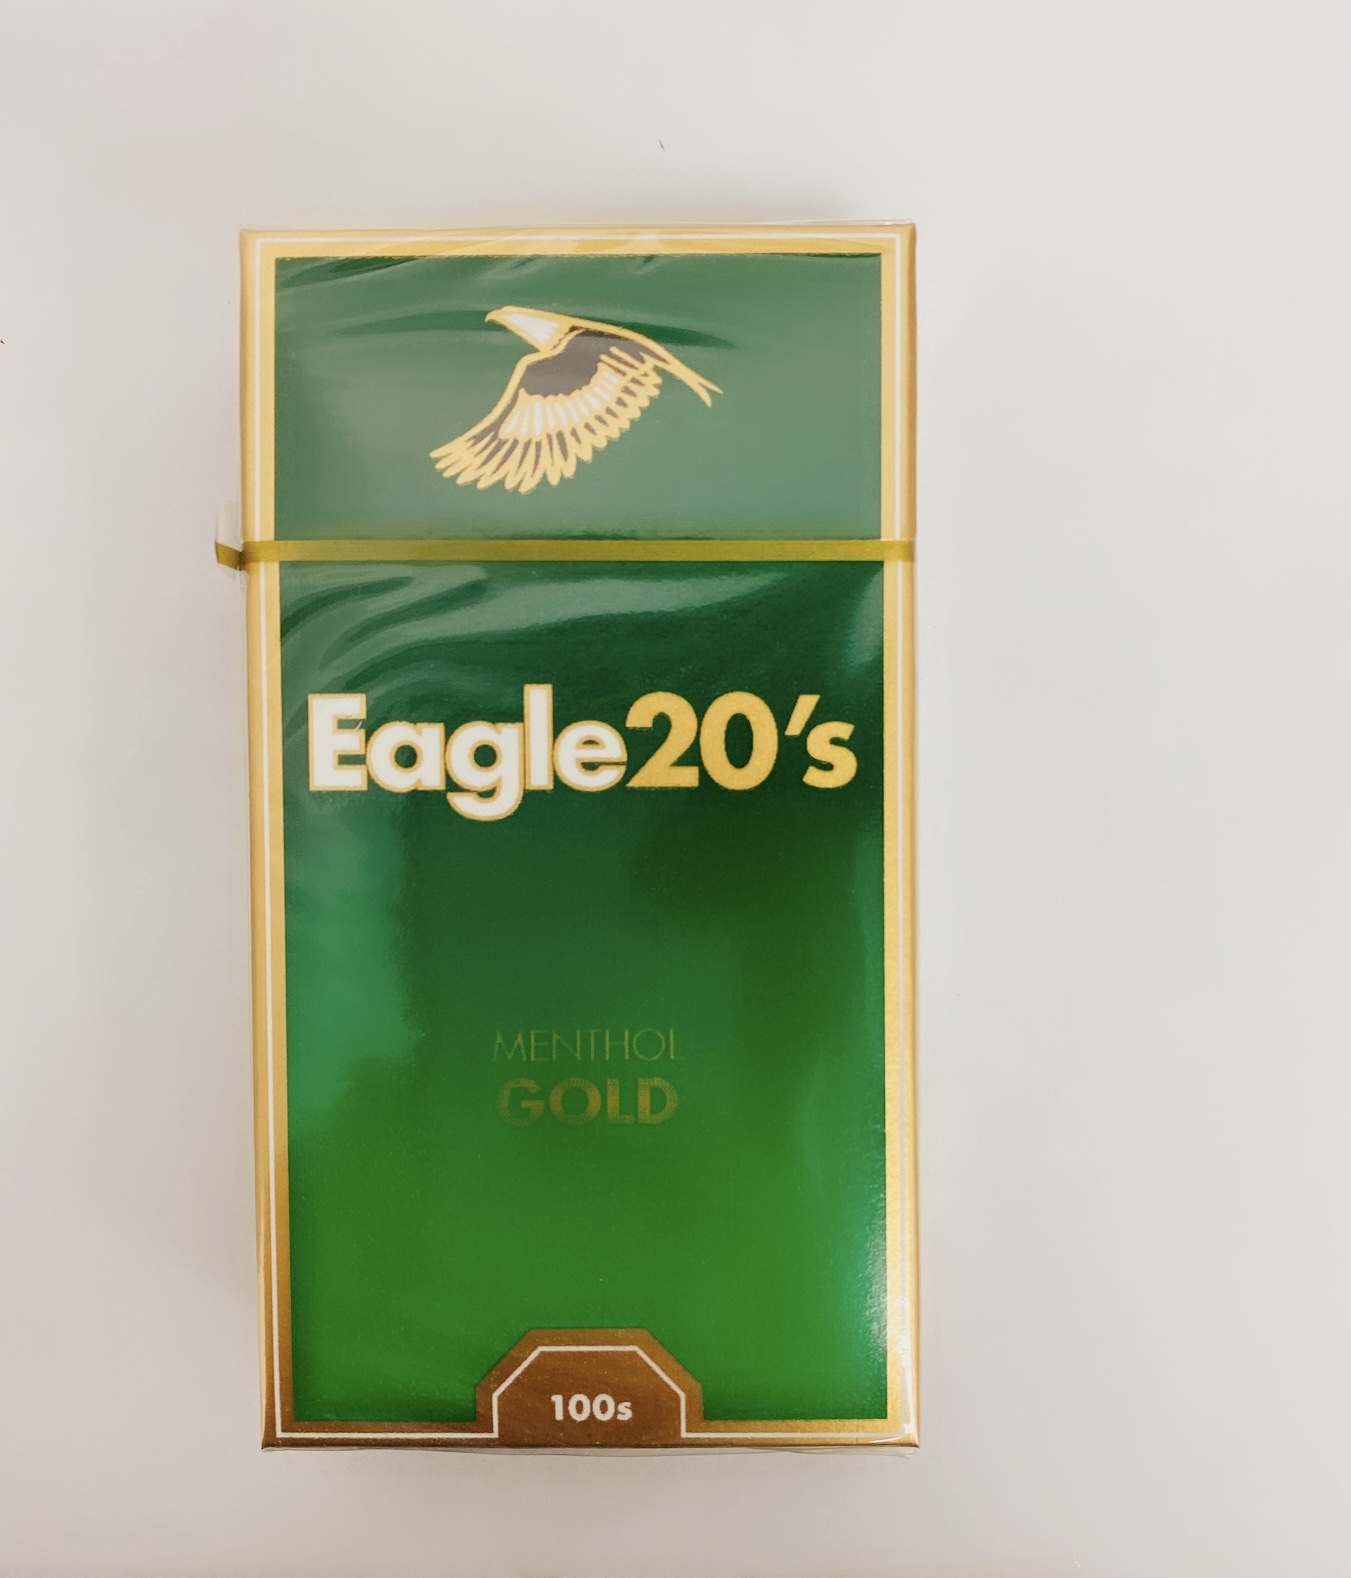 Eagle 20's – Liggett Vector Brands